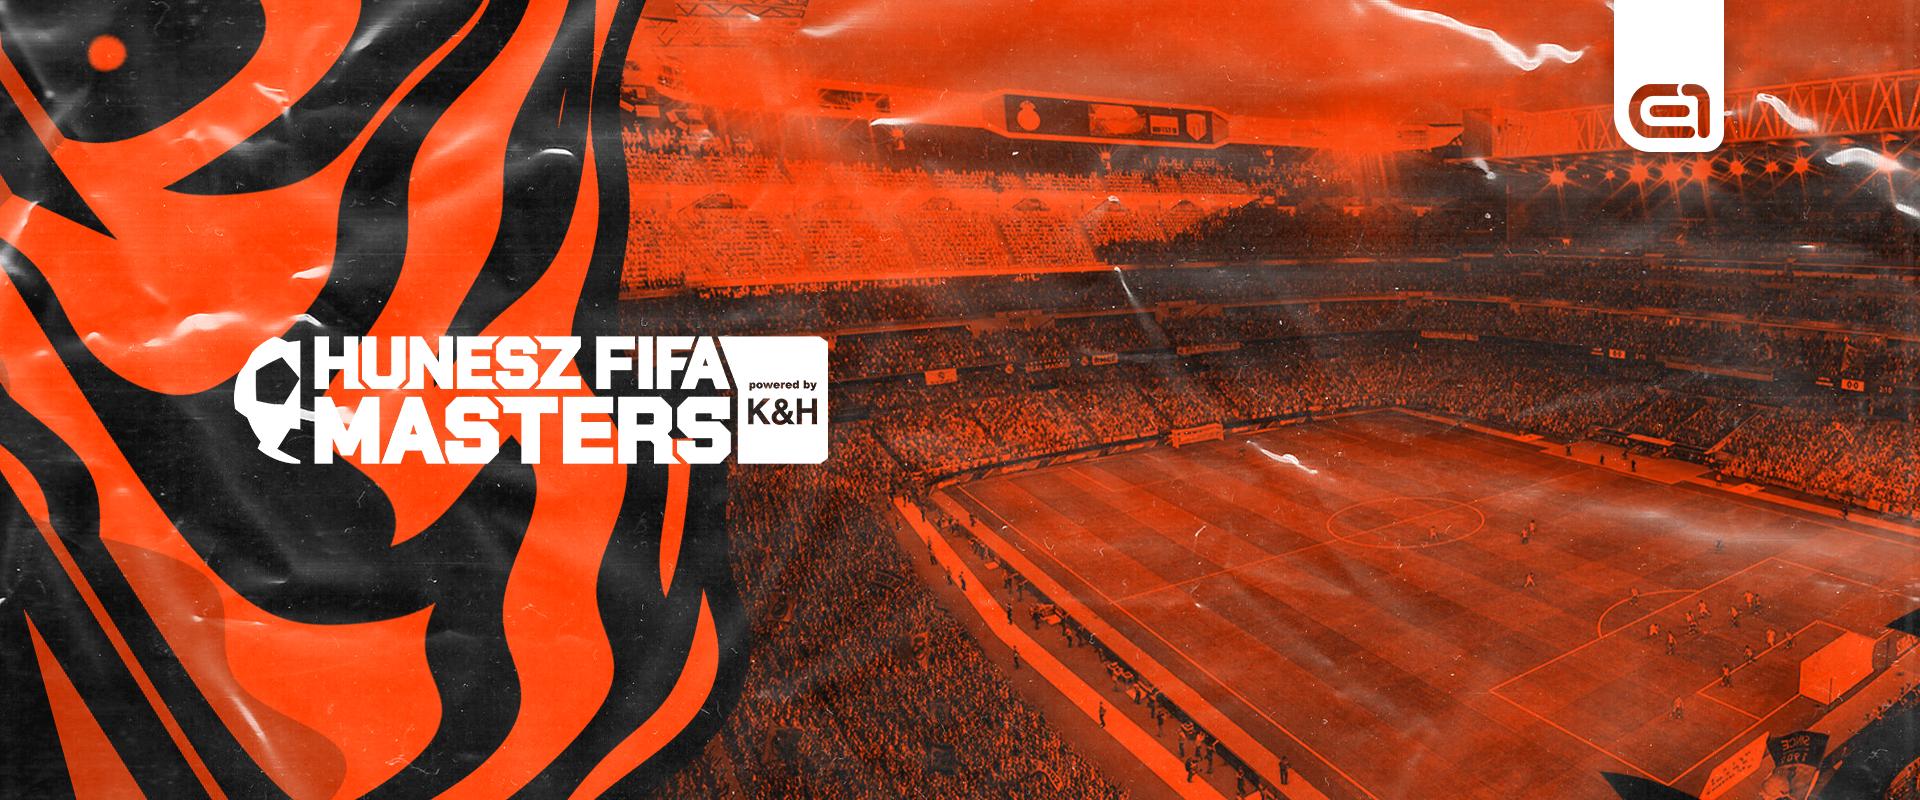 HUNESZ FIFA Masters powered by K&H: Sero megvédte címét egy pazar döntő után